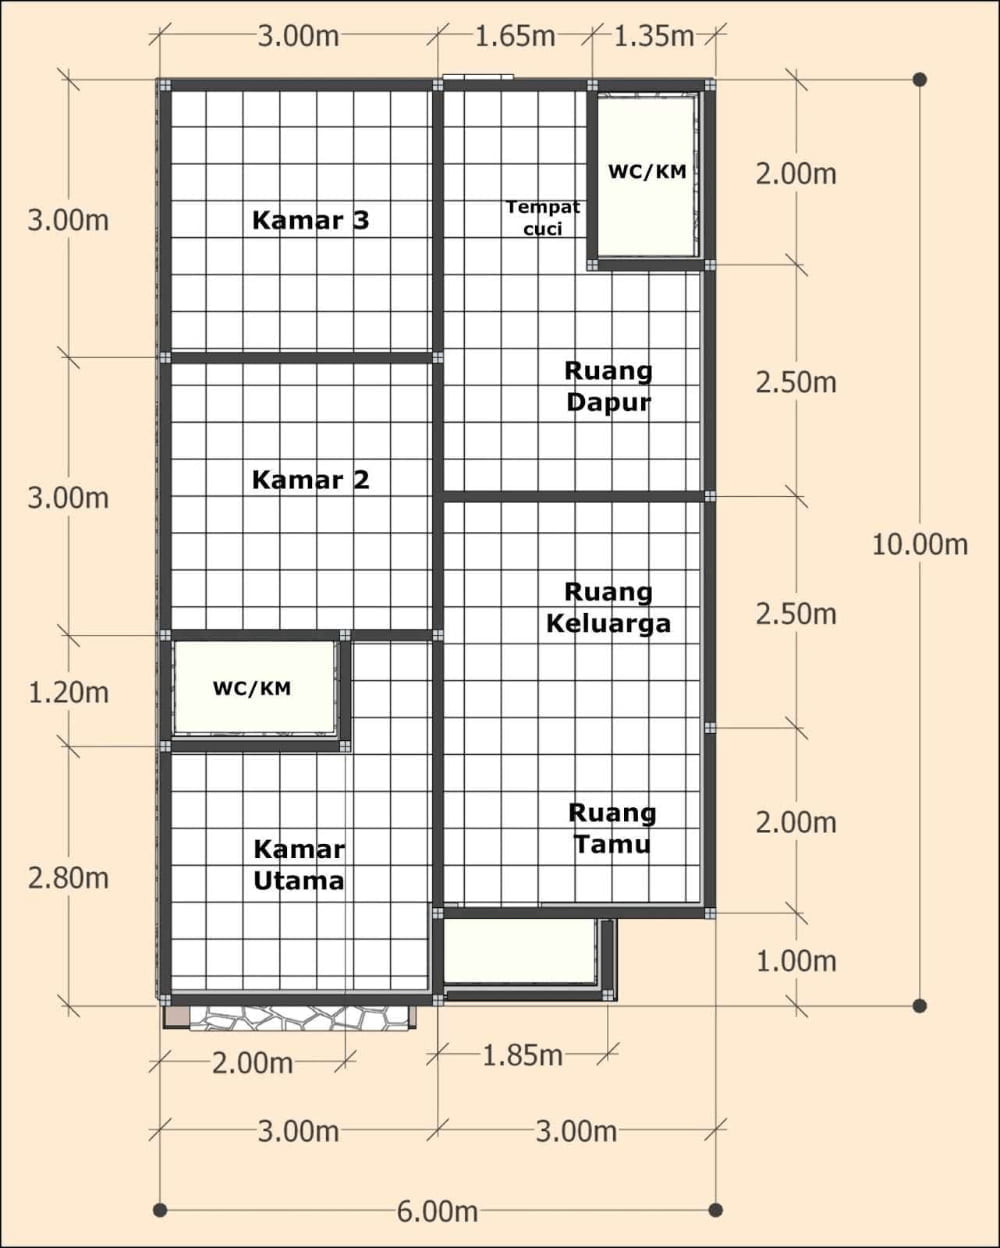 57 Populer Desain Rumah Minimalis 6x10 Meter Trend Masa Kini